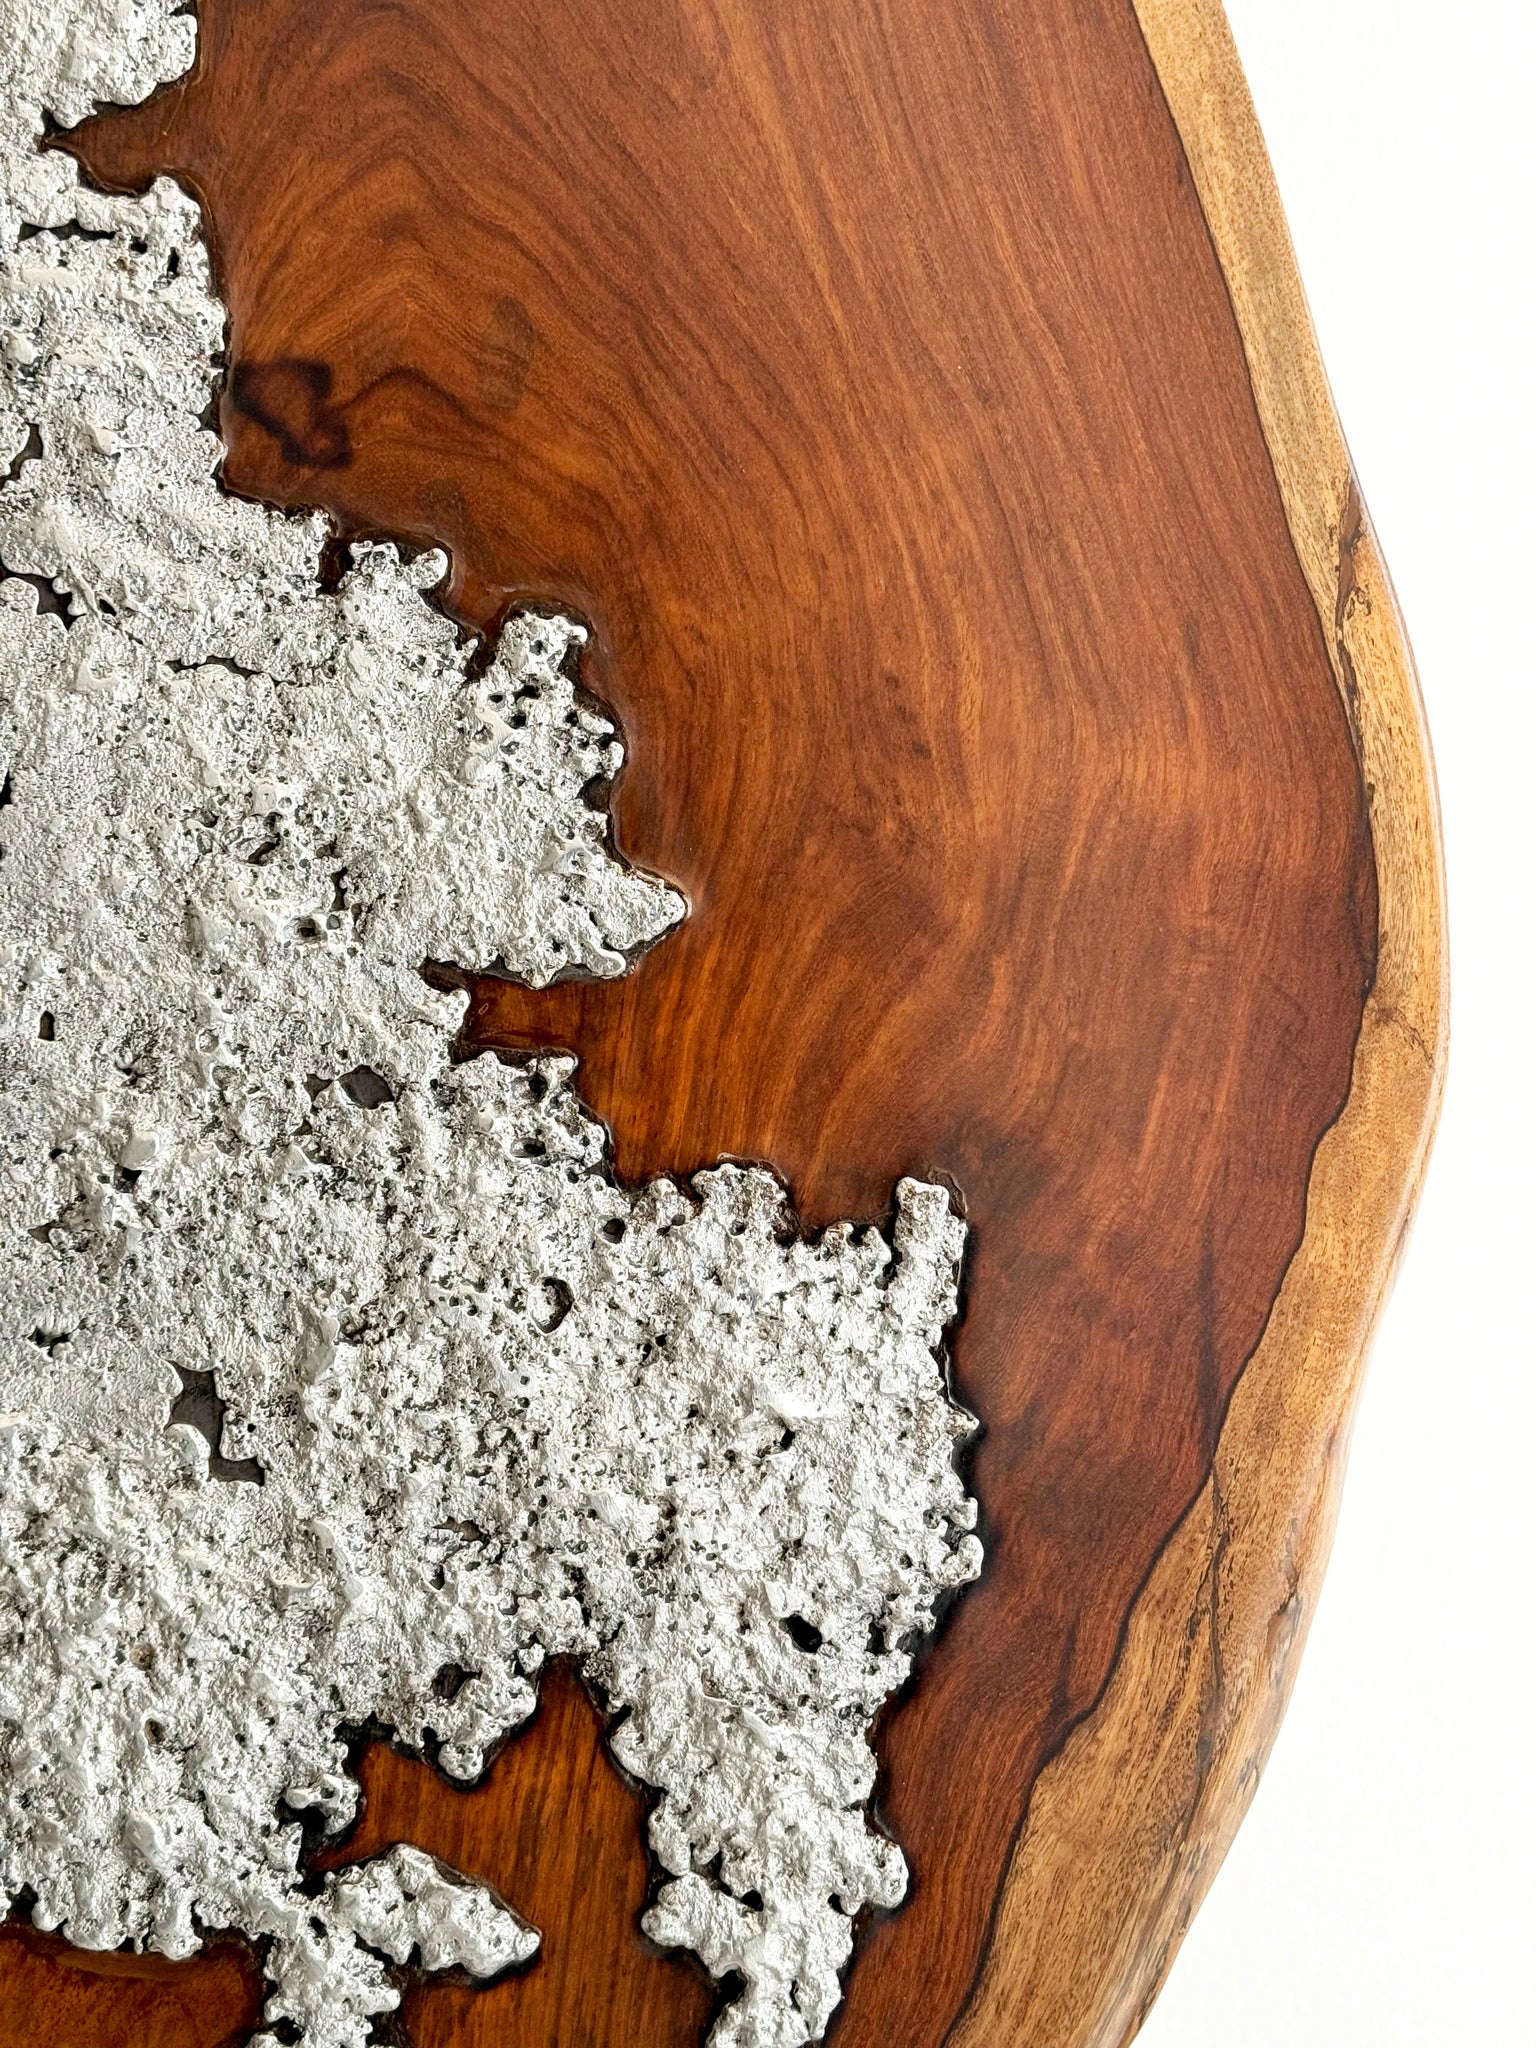 Molten Aluminium on Wood // 03